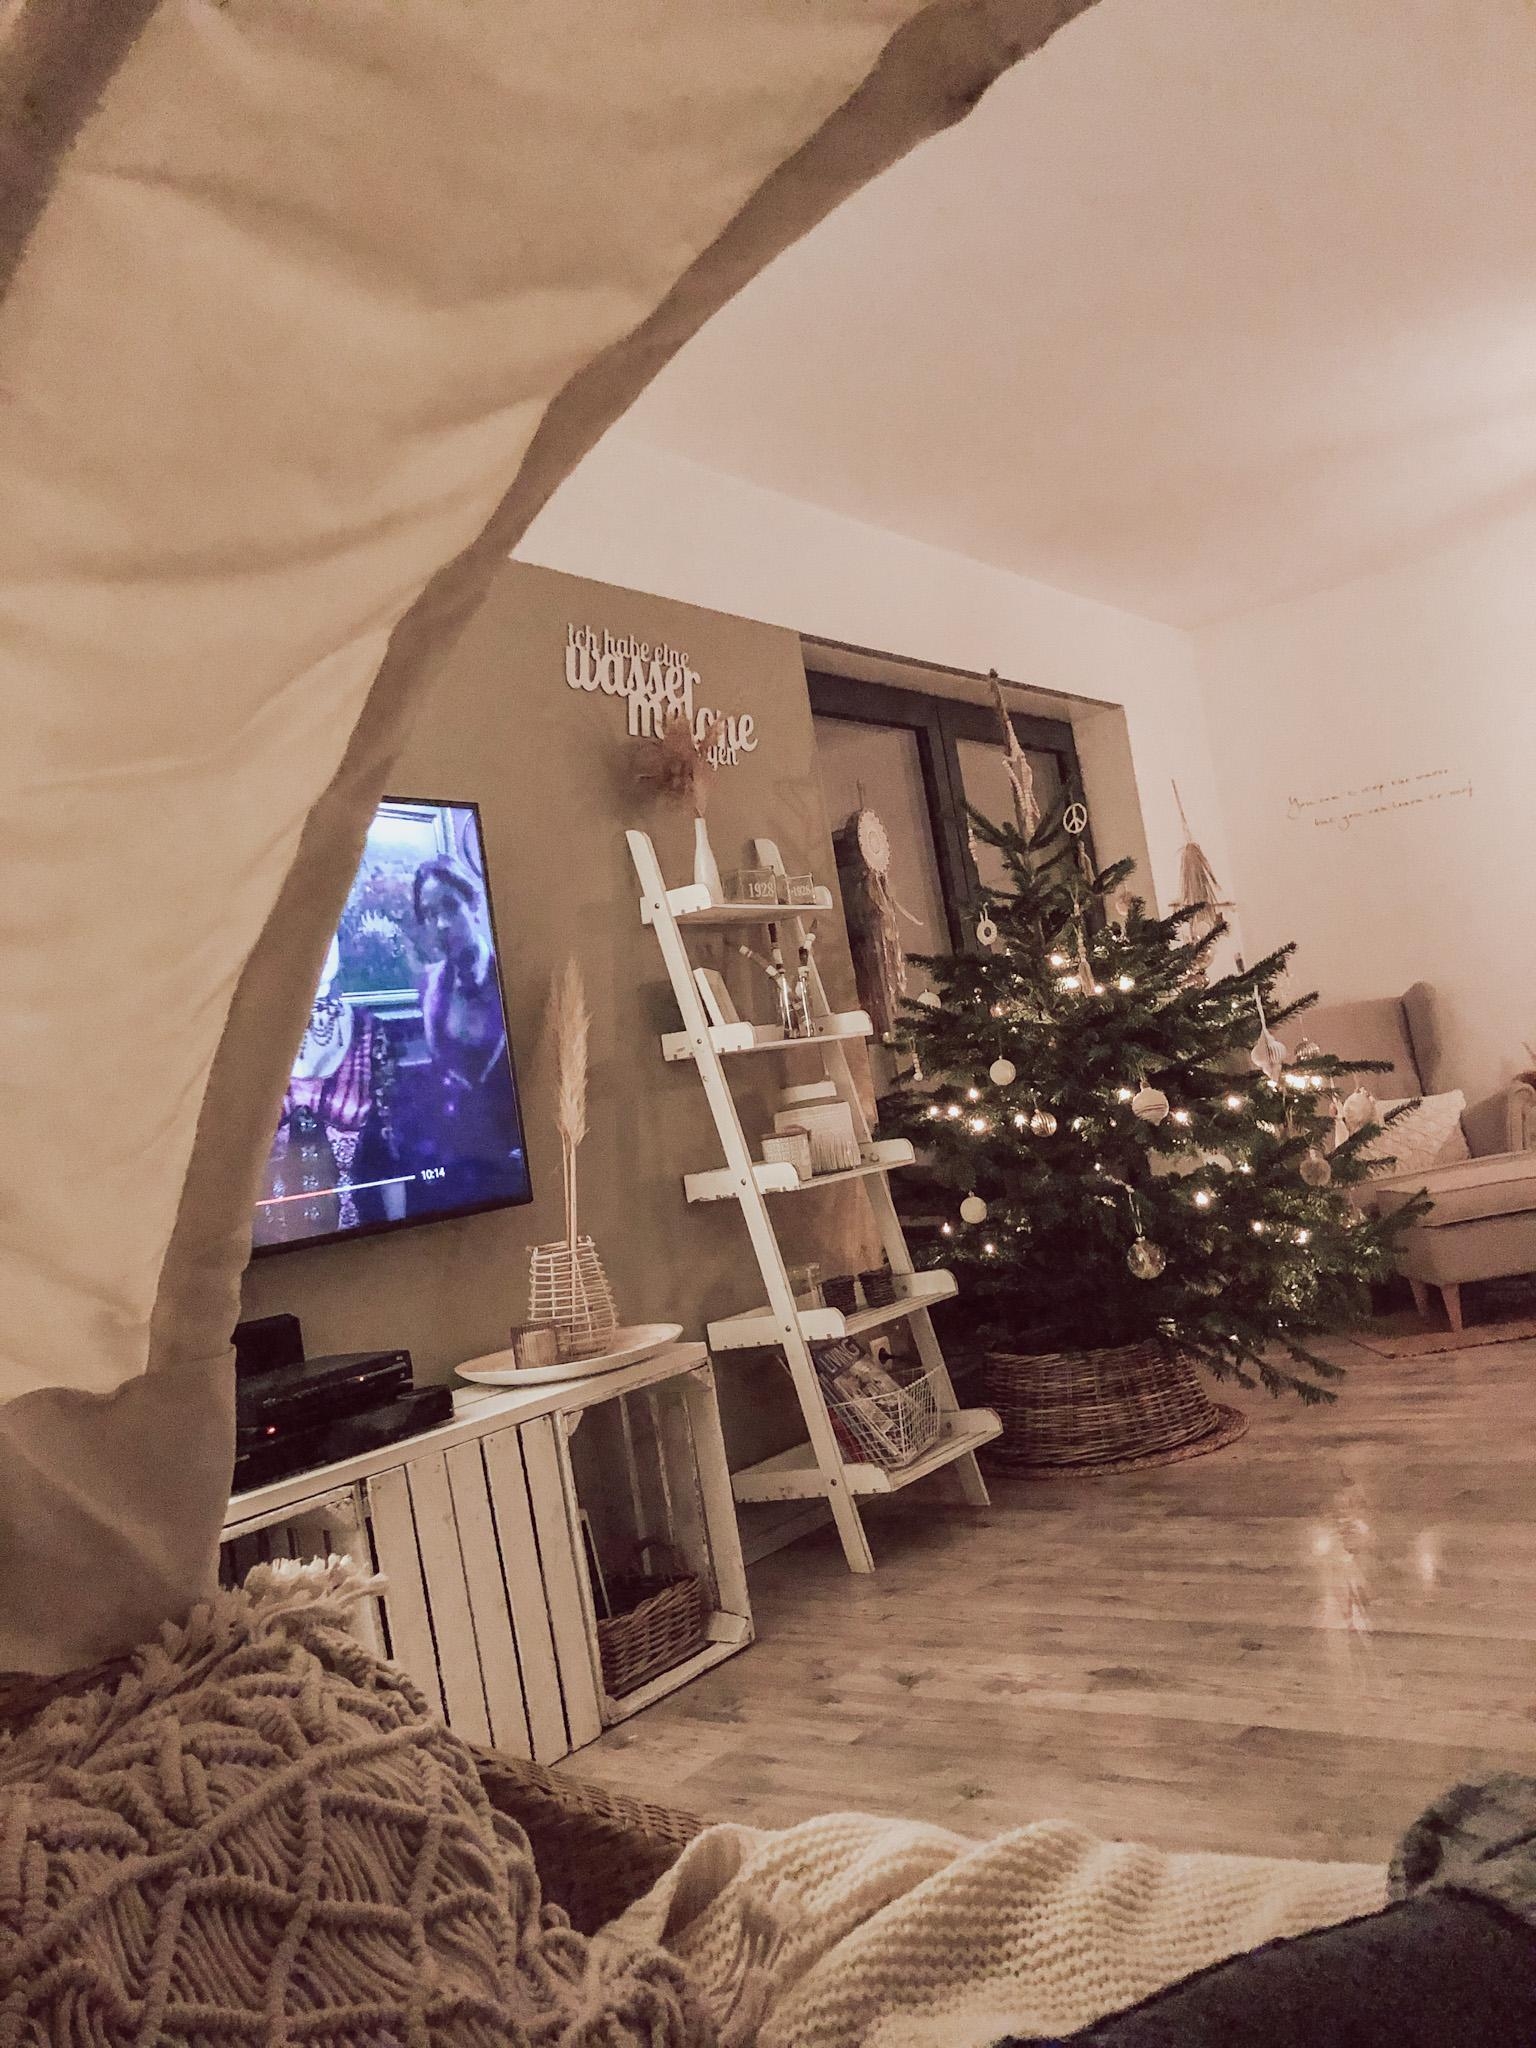 Boho Christmas Vibes 🤍
#boho #bohochristmas #cozy #home #bohohome